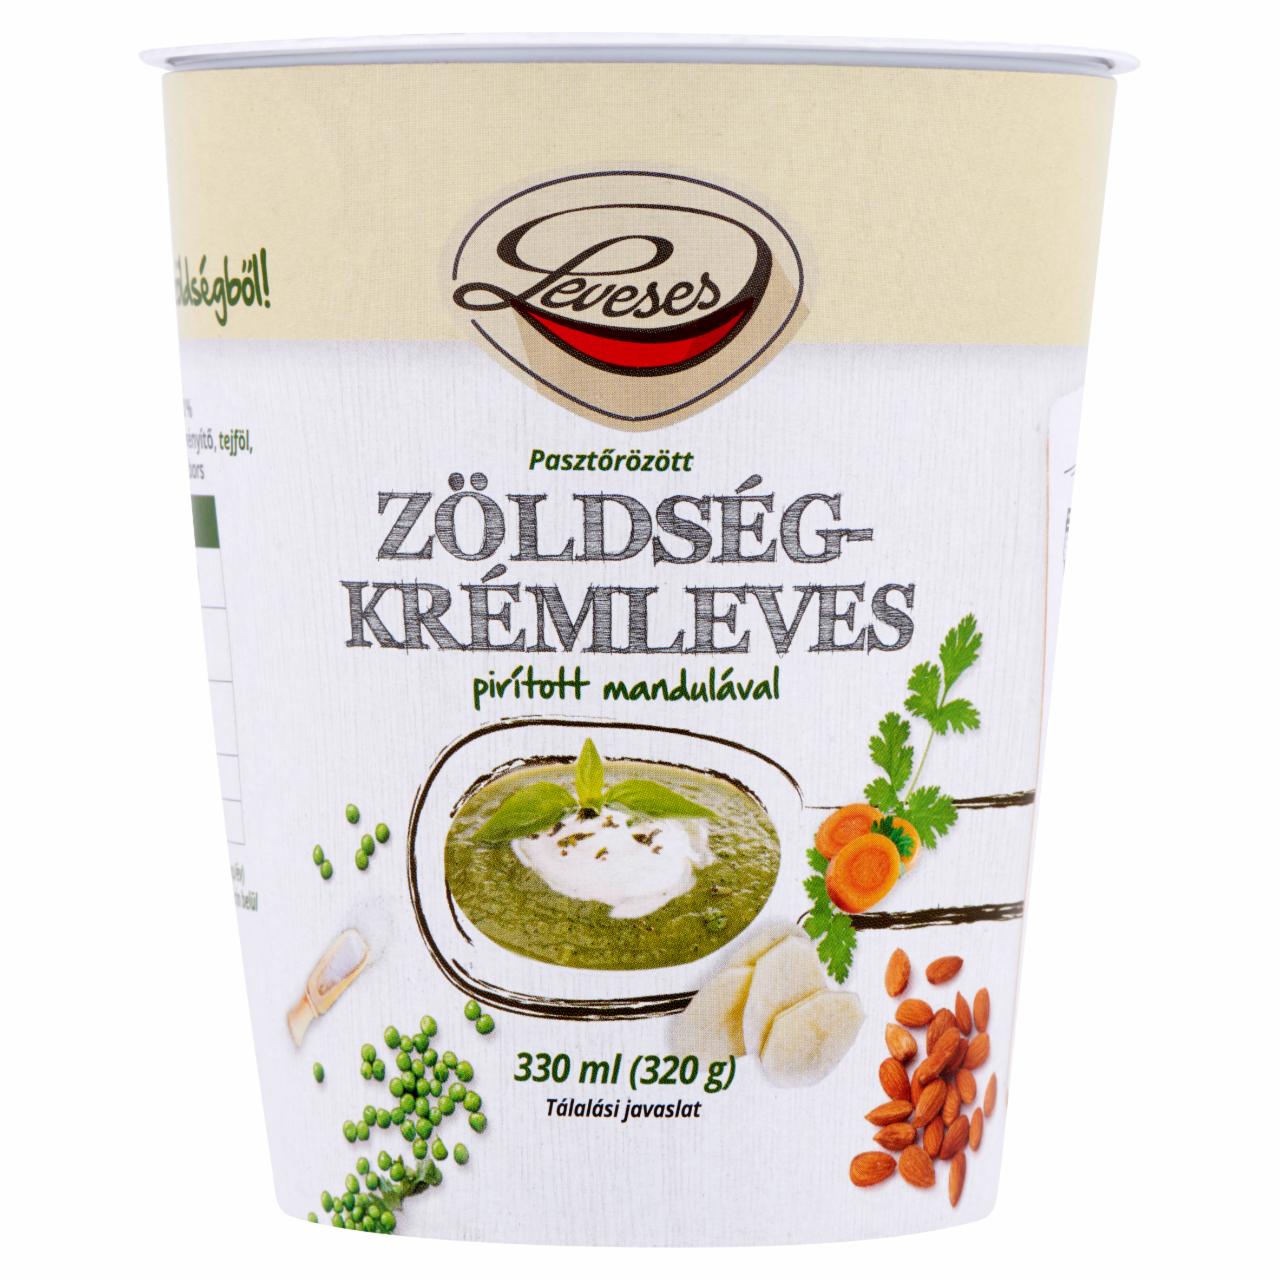 Képek - Leveses zöldségkrémleves pirított mandulával 330 ml